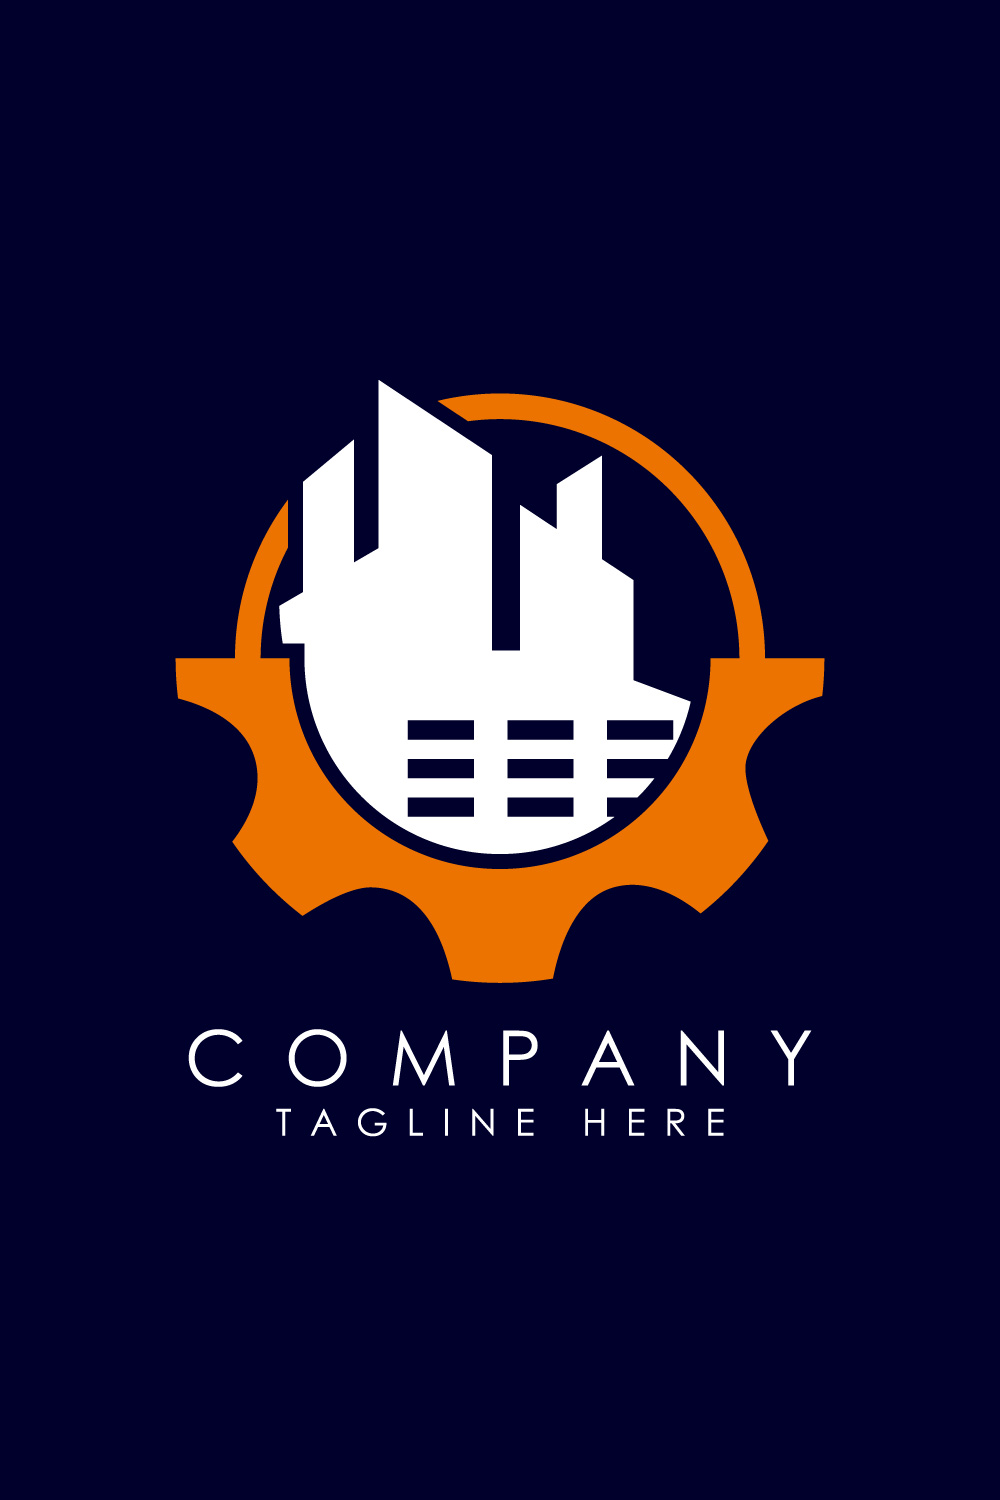 logo design ideas for business